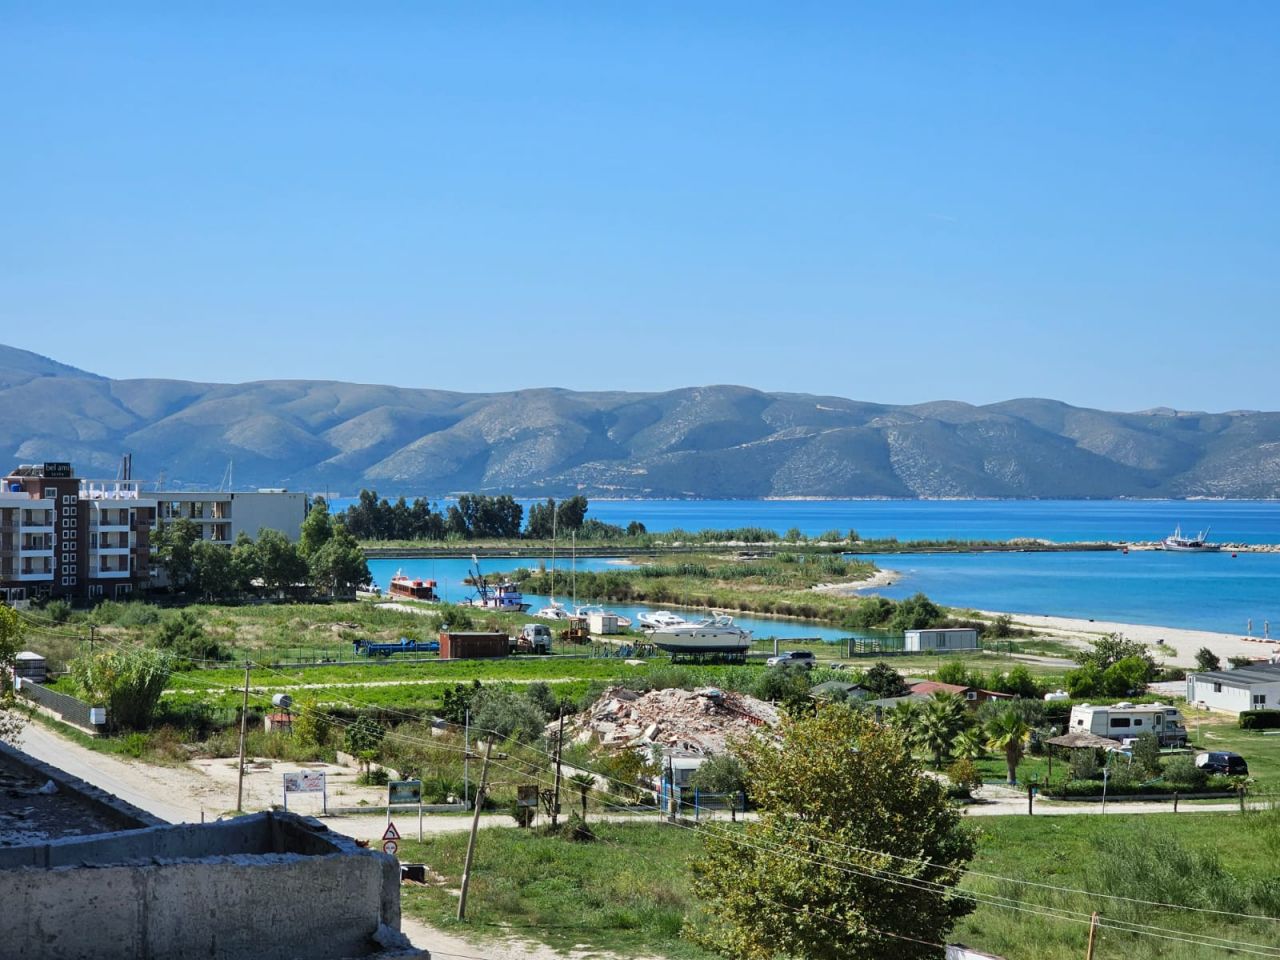 Leilighet Til Salgs I Vlora Albania, Beliggende I Et Godt Område, Bare Noen Få Skritt Unna Stranden